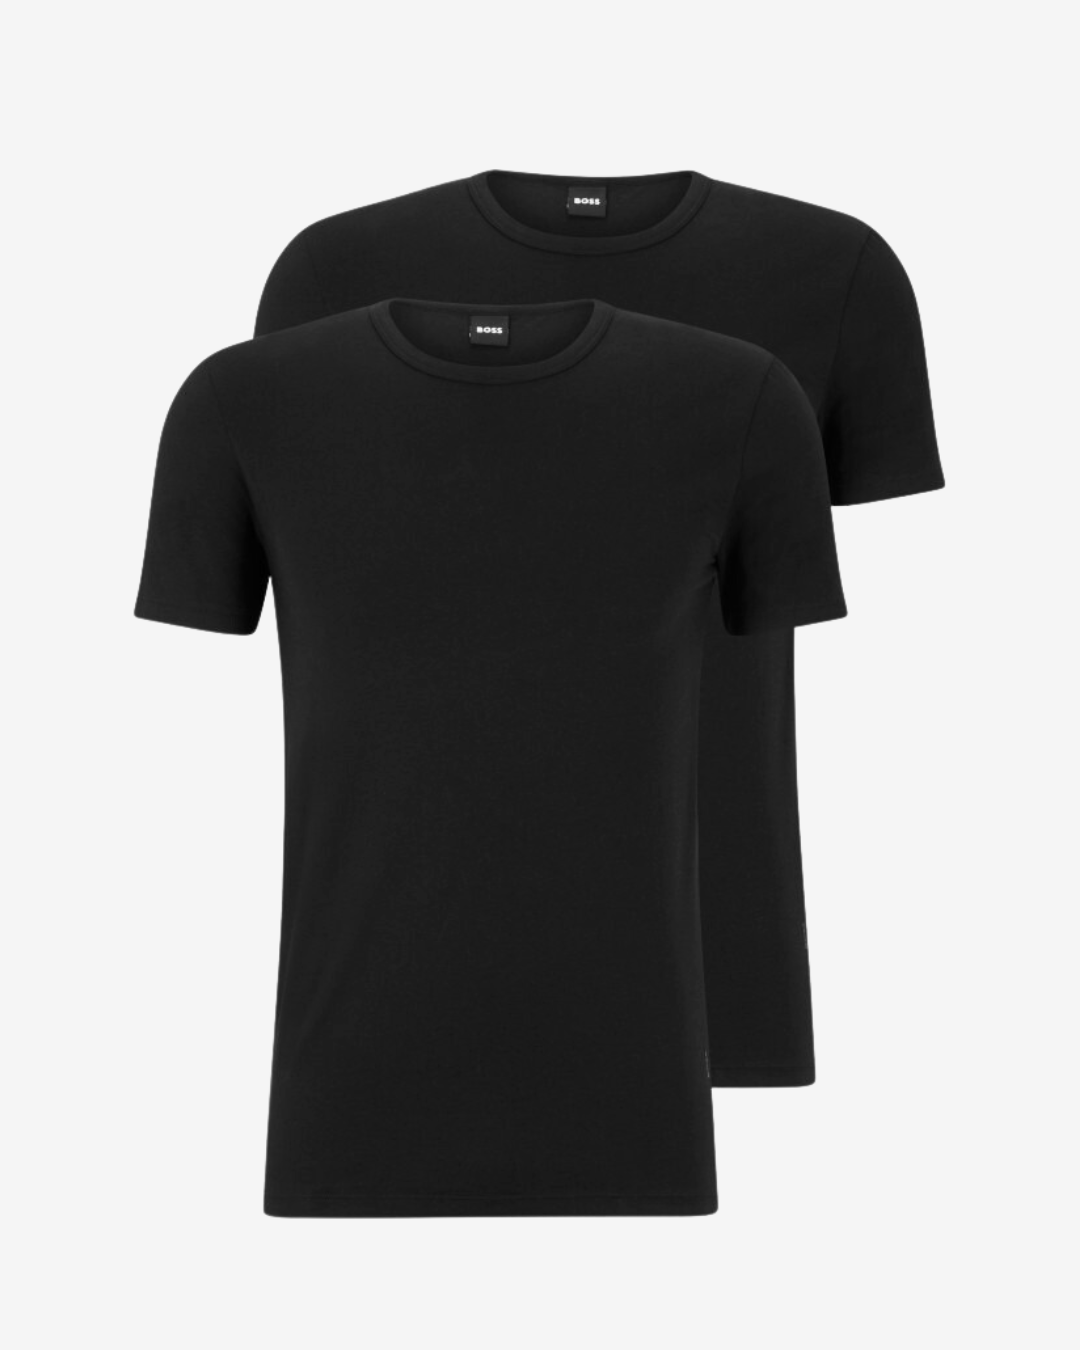 Se Hugo Boss Rundhals slim t-shirt 2-pak - Sort - Str. L - Modish.dk hos Modish.dk